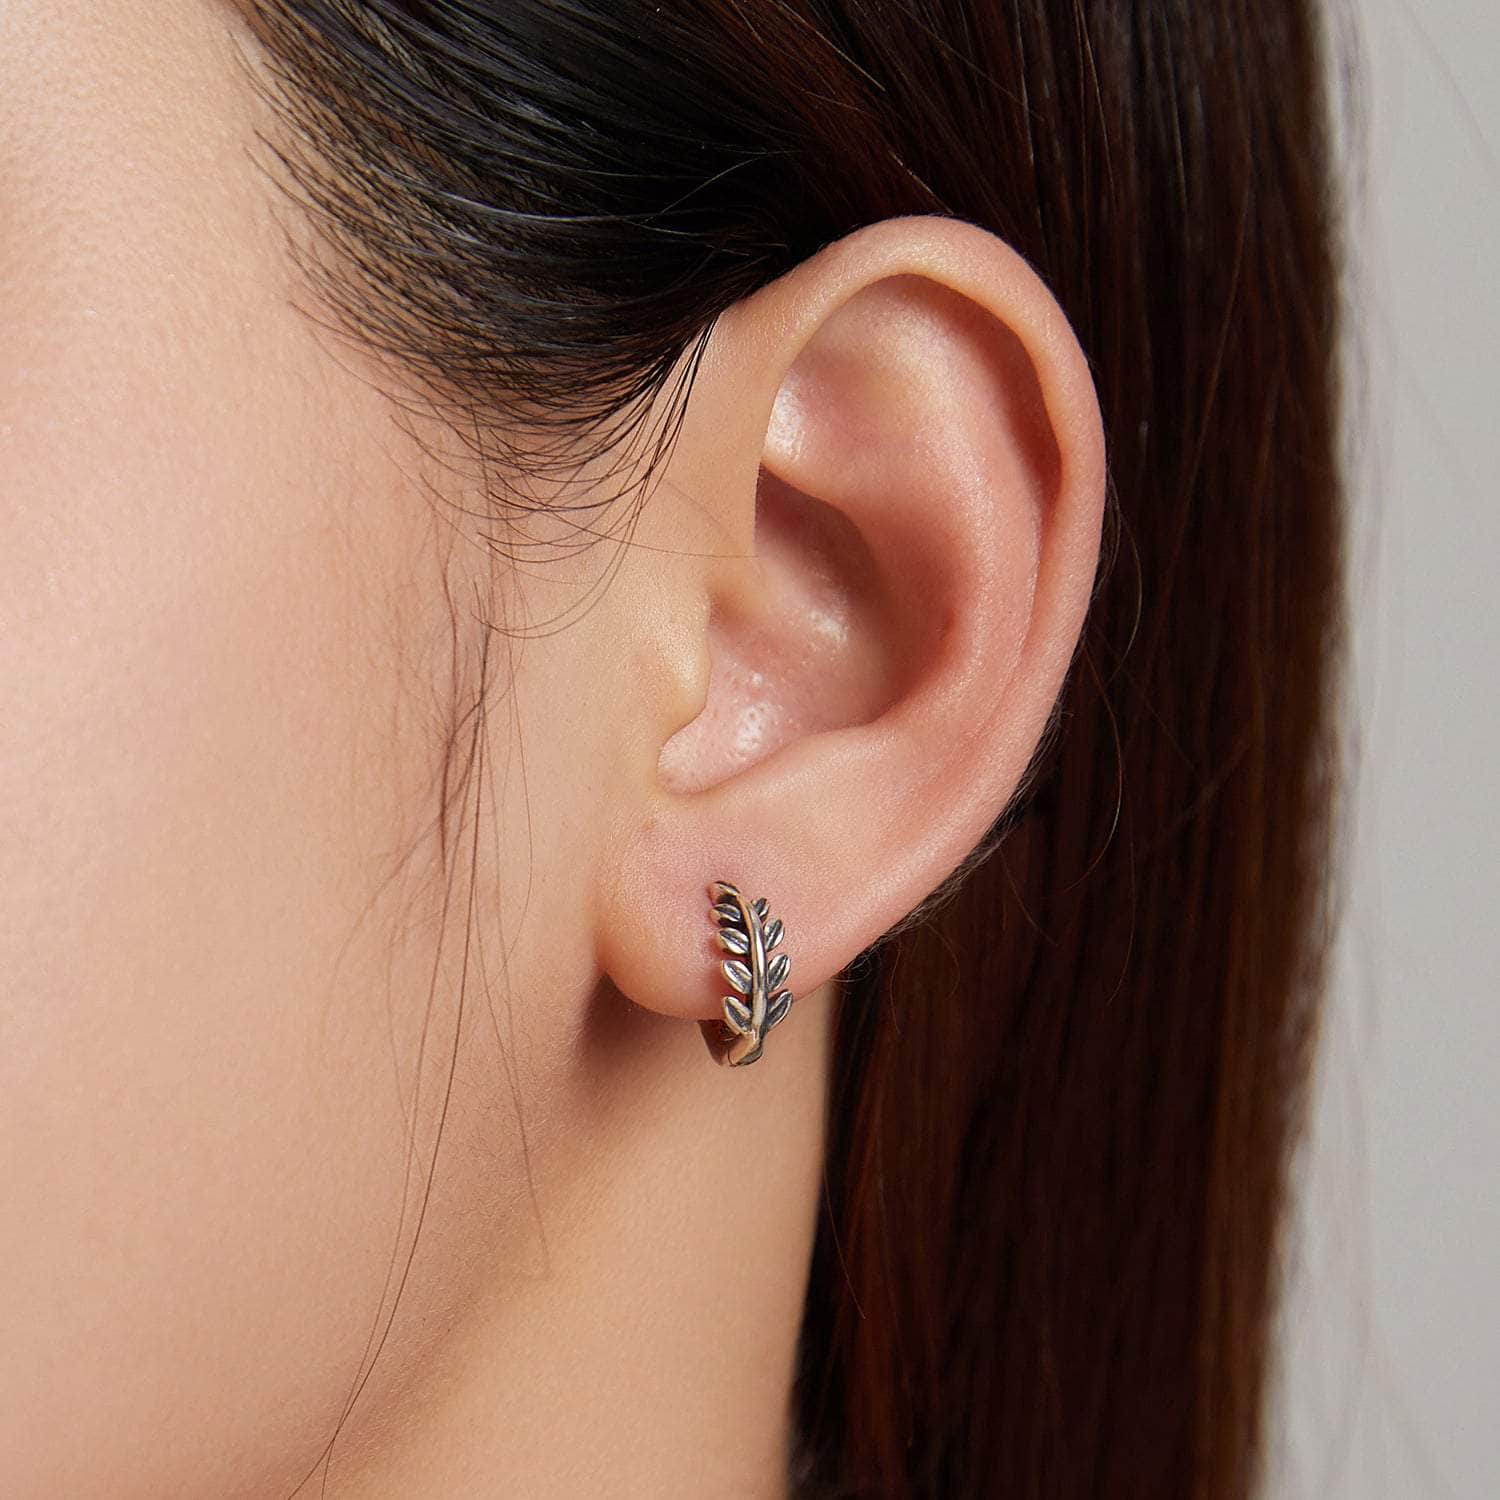 jewelaus Earrings Leaf Hoop Earrings